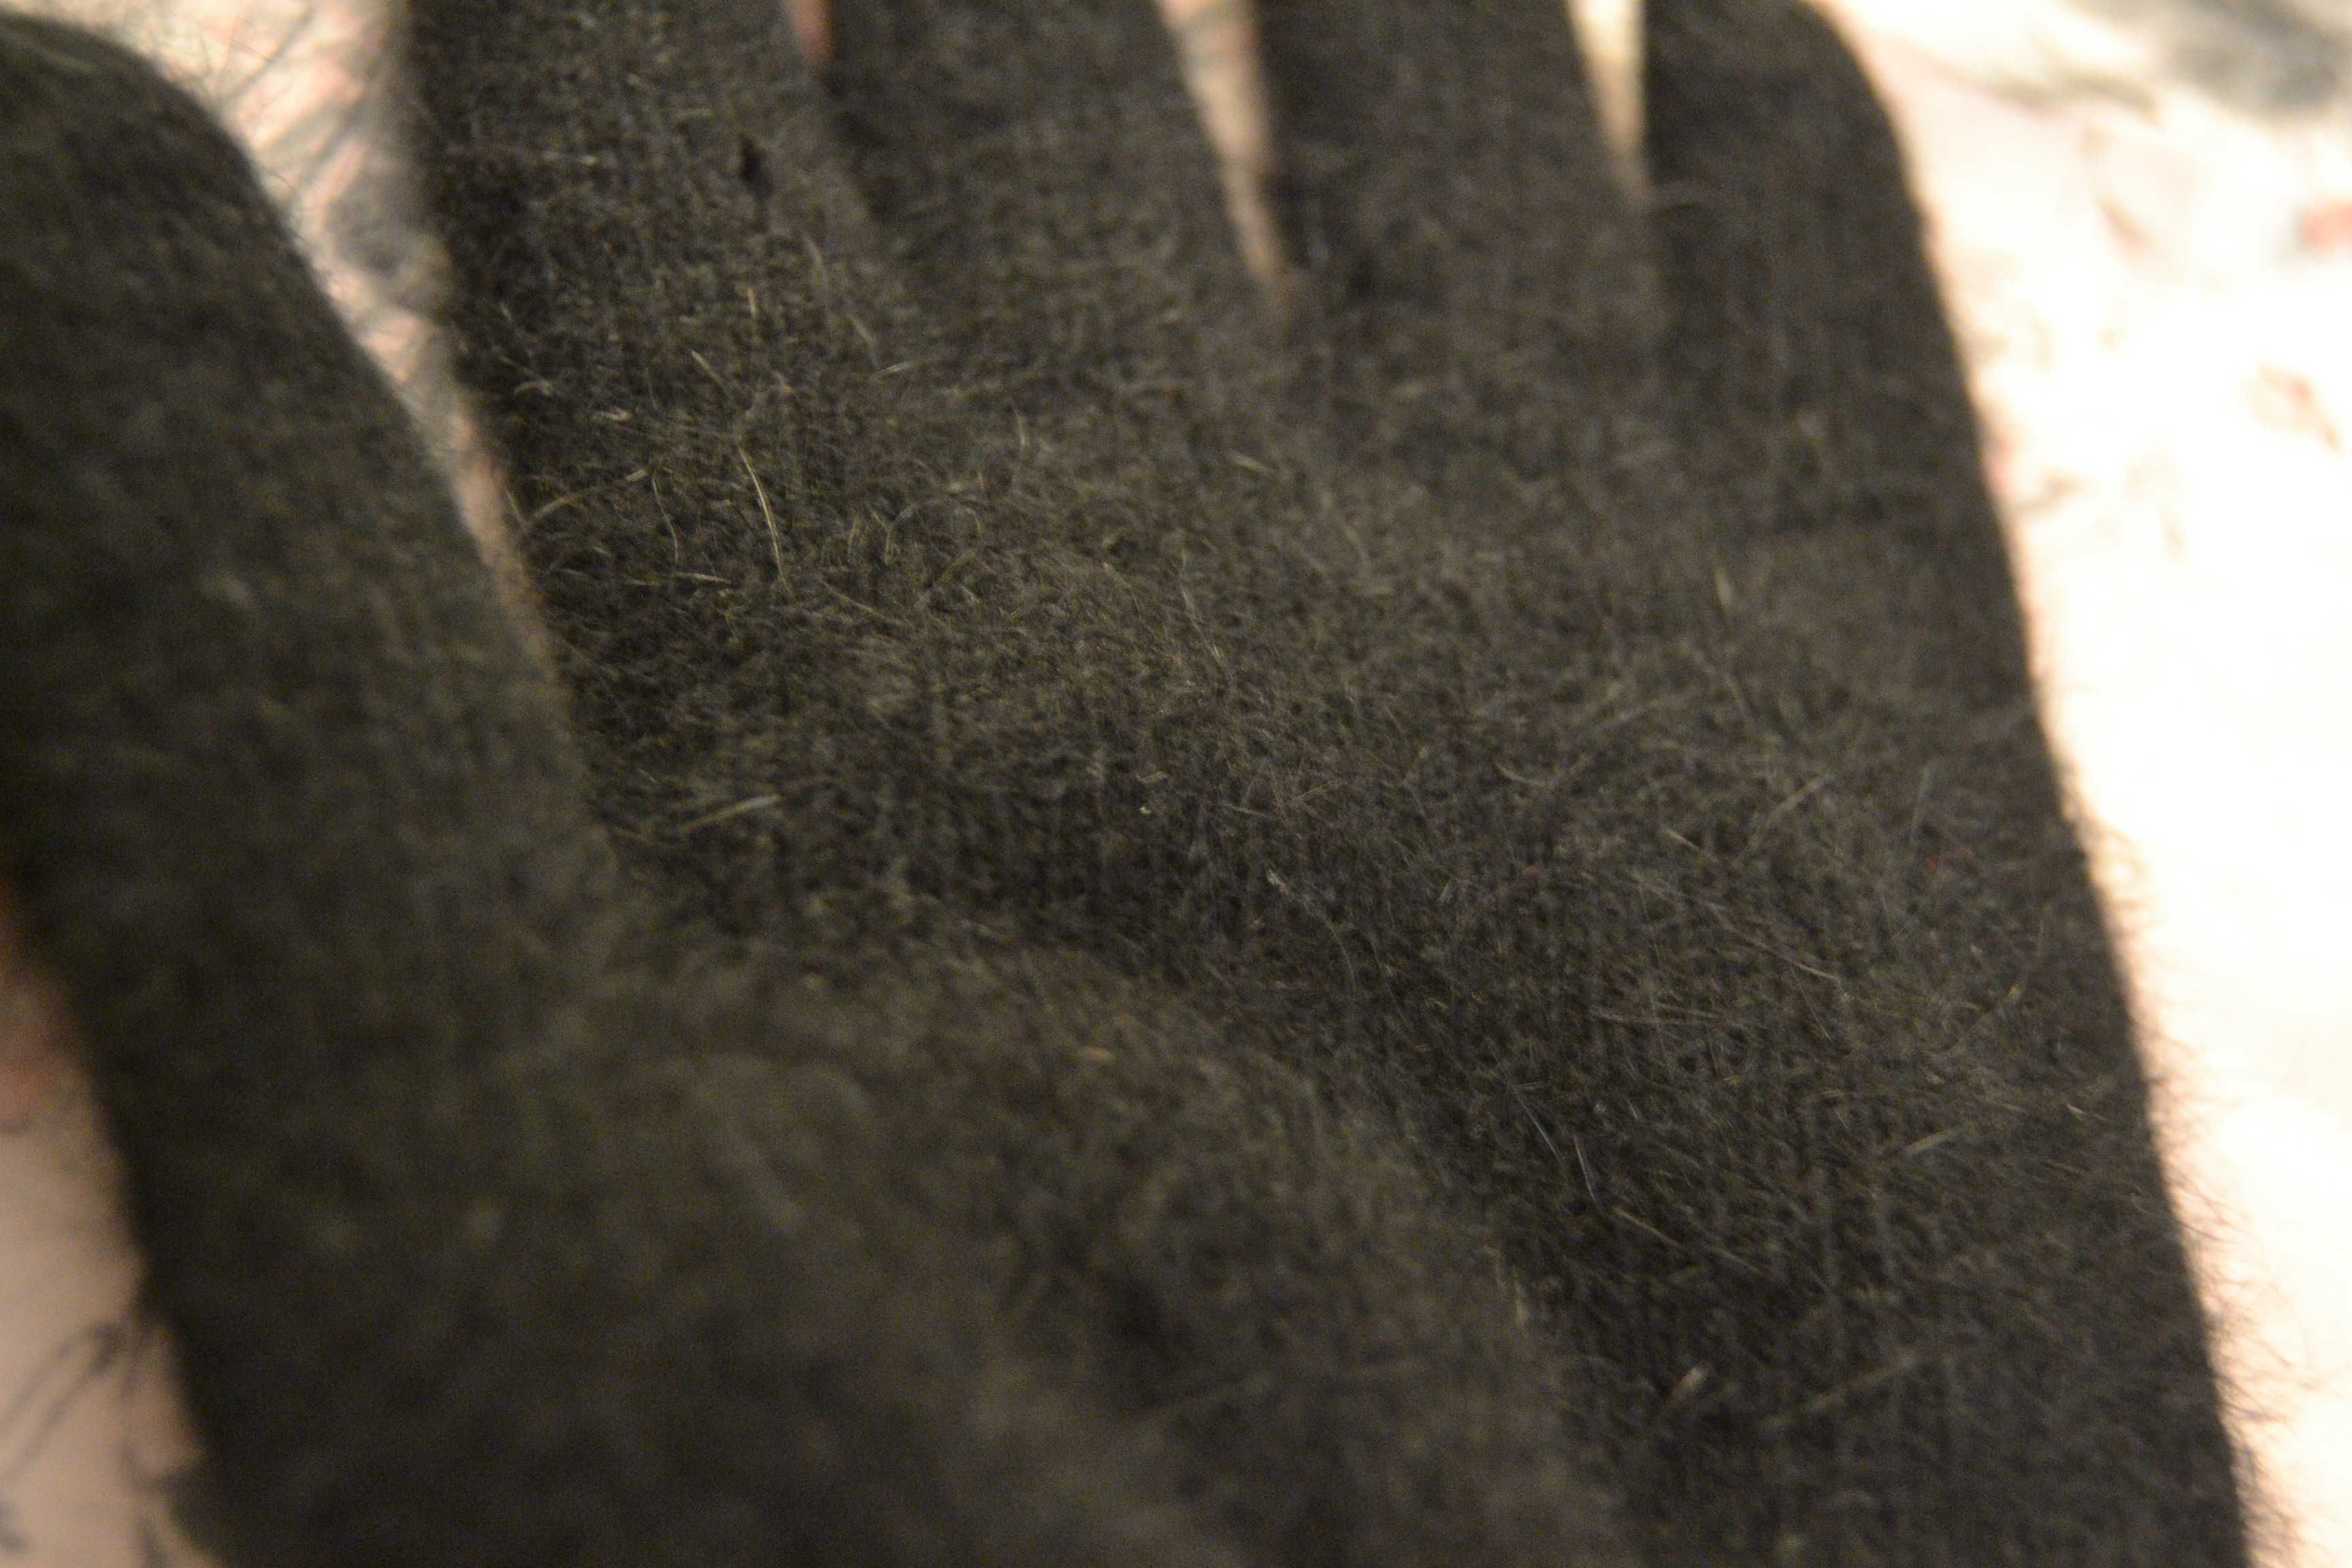 Grube czarne rękawiczki  bardzo miłe w dotyku na długie i smukłe palce